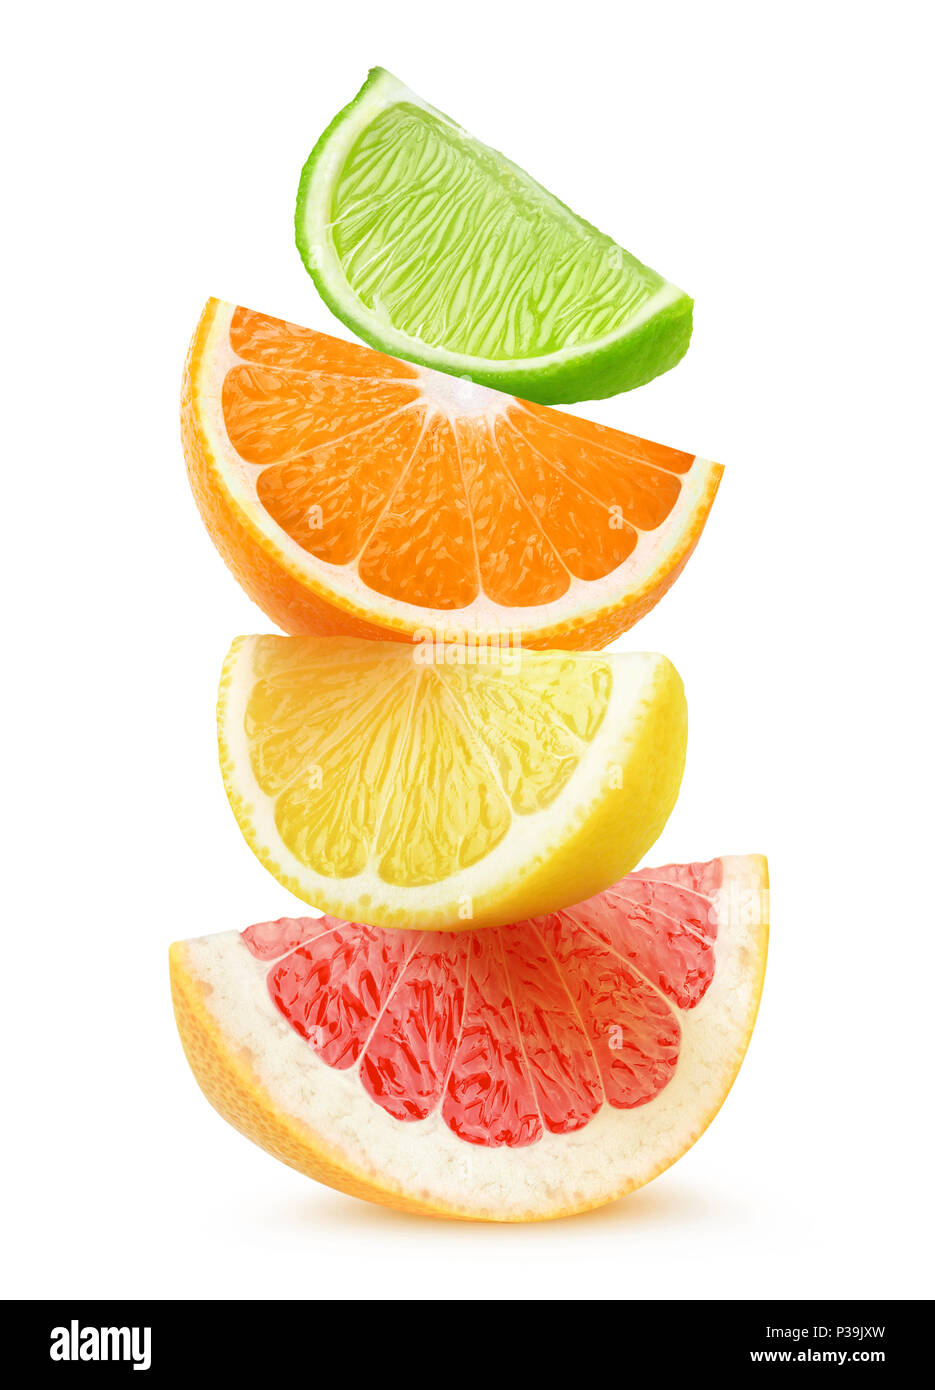 Isolate le fette di agrumi. Pezzi di pompelmo, arancio, limone e frutta di calce sulla parte superiore di ogni altro isolato su sfondo bianco con tracciato di ritaglio Foto Stock